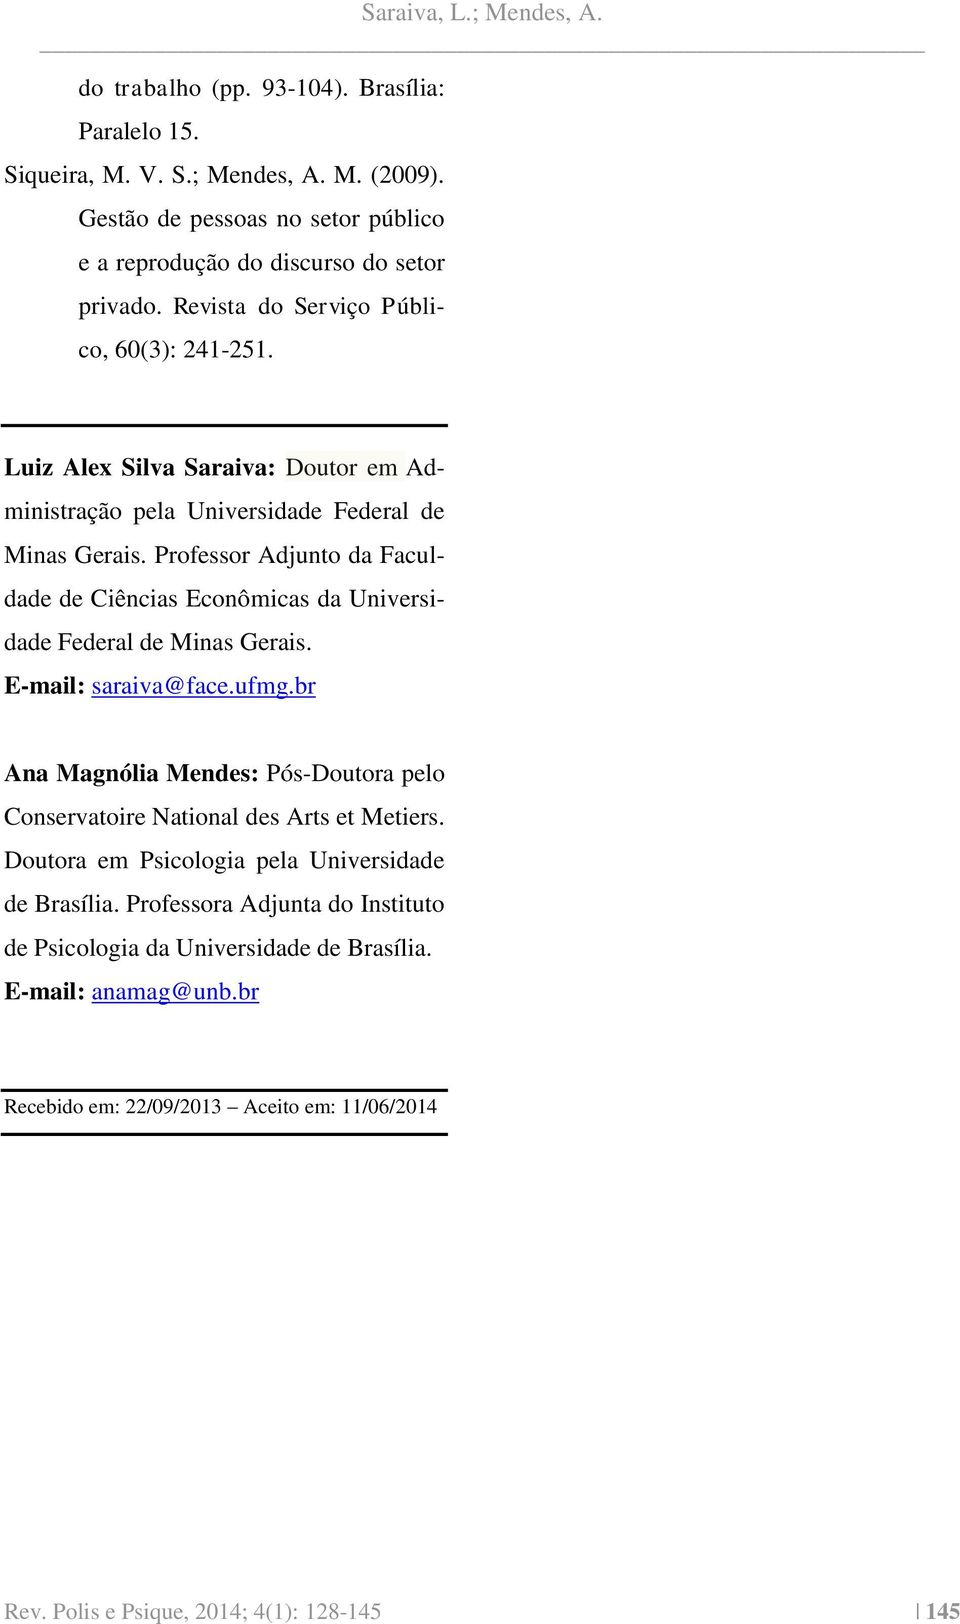 Professor Adjunto da Faculdade de Ciências Econômicas da Universidade Federal de Minas Gerais. E-mail: saraiva@face.ufmg.